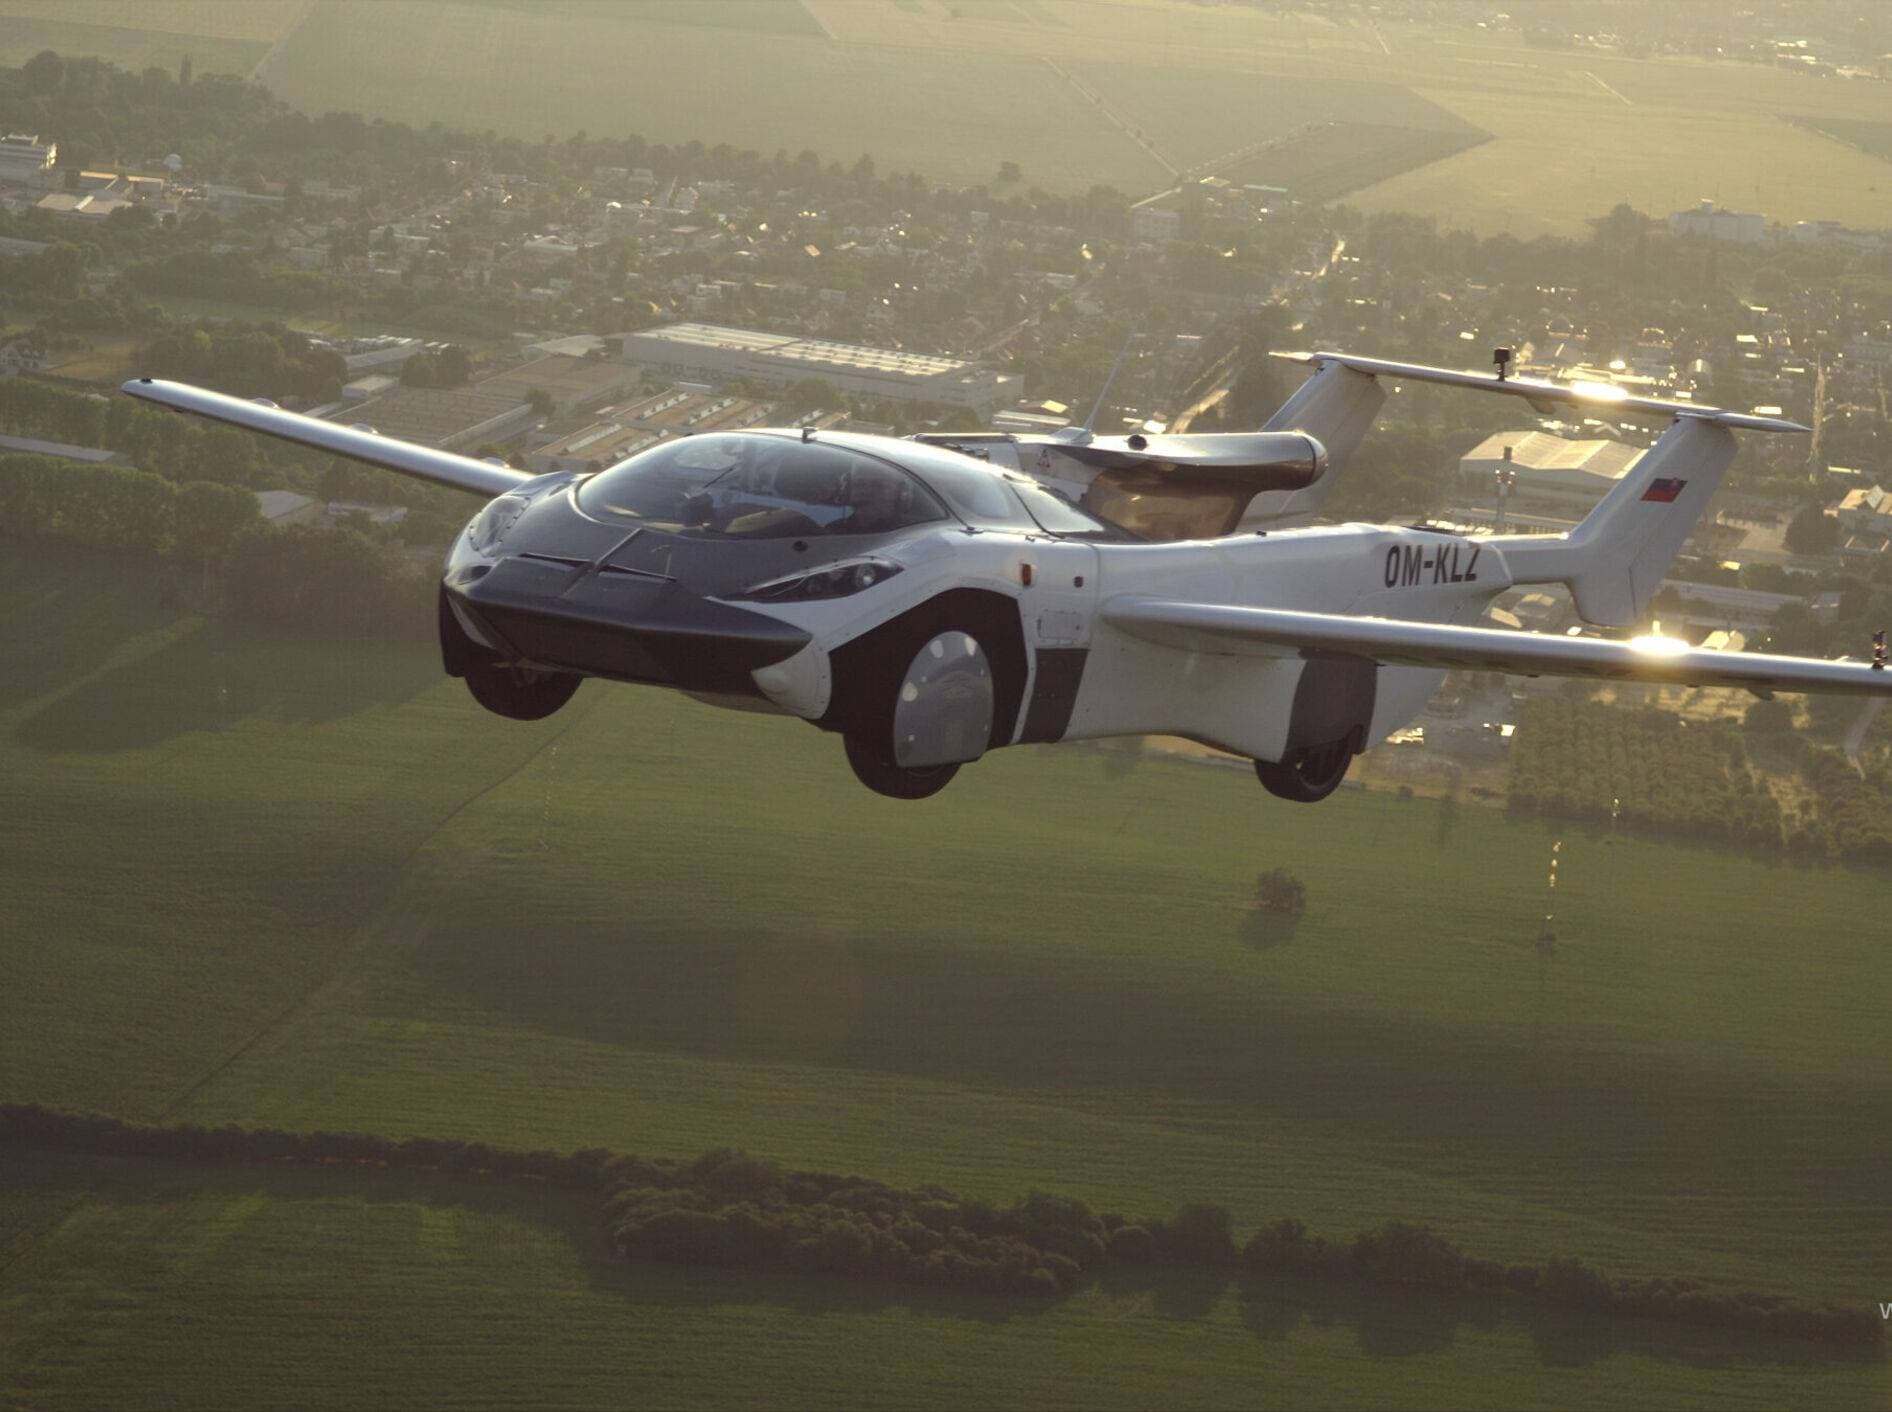 Autonom in der Luft: Flugzeug ohne Pilot?